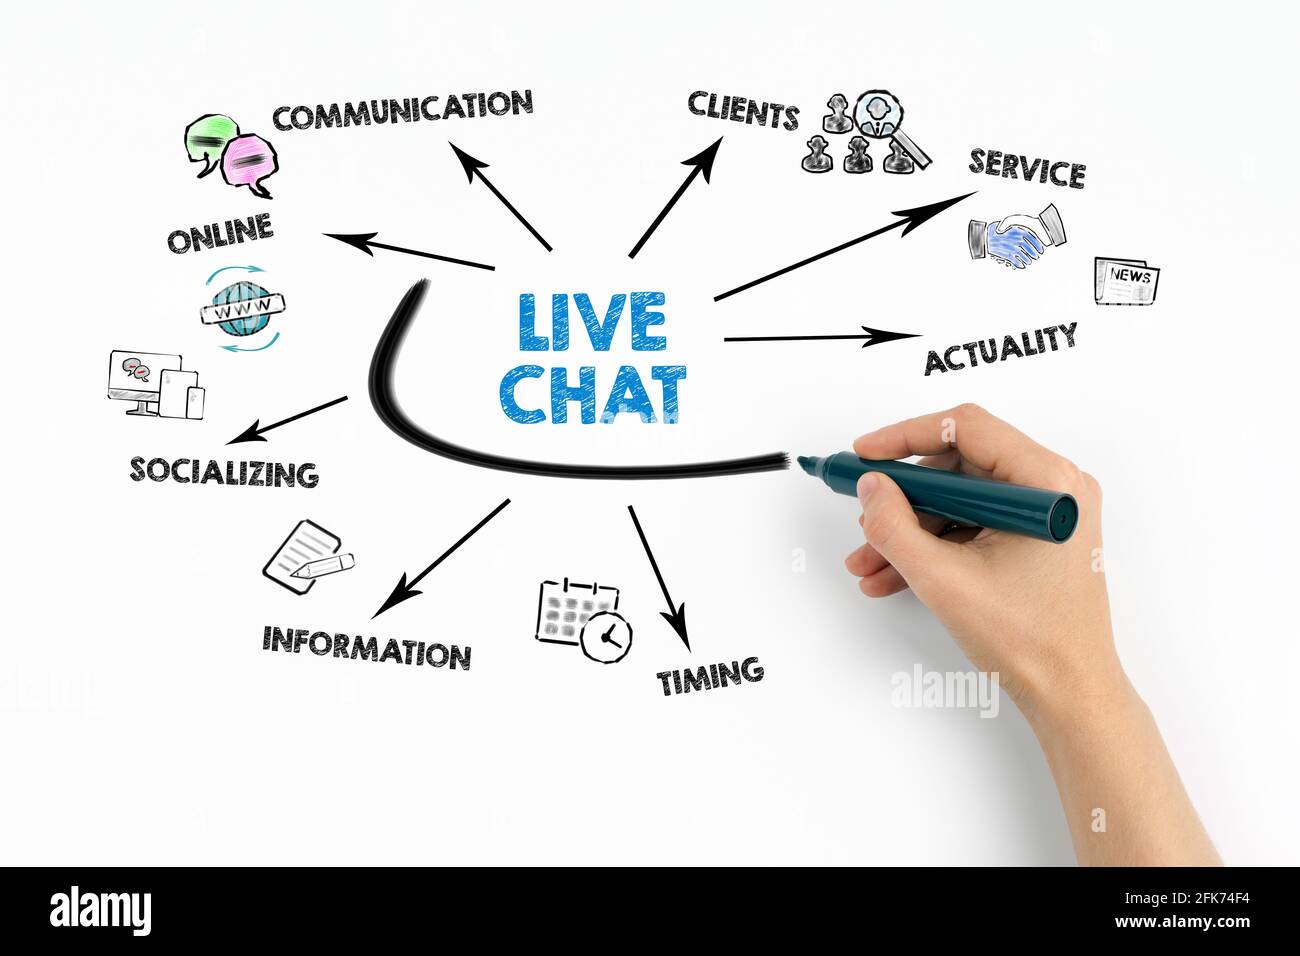 CHAT DAL VIVO. Online, comunicazione, informazione e socializzazione. Grafico con parole chiave e icone su sfondo bianco Foto Stock